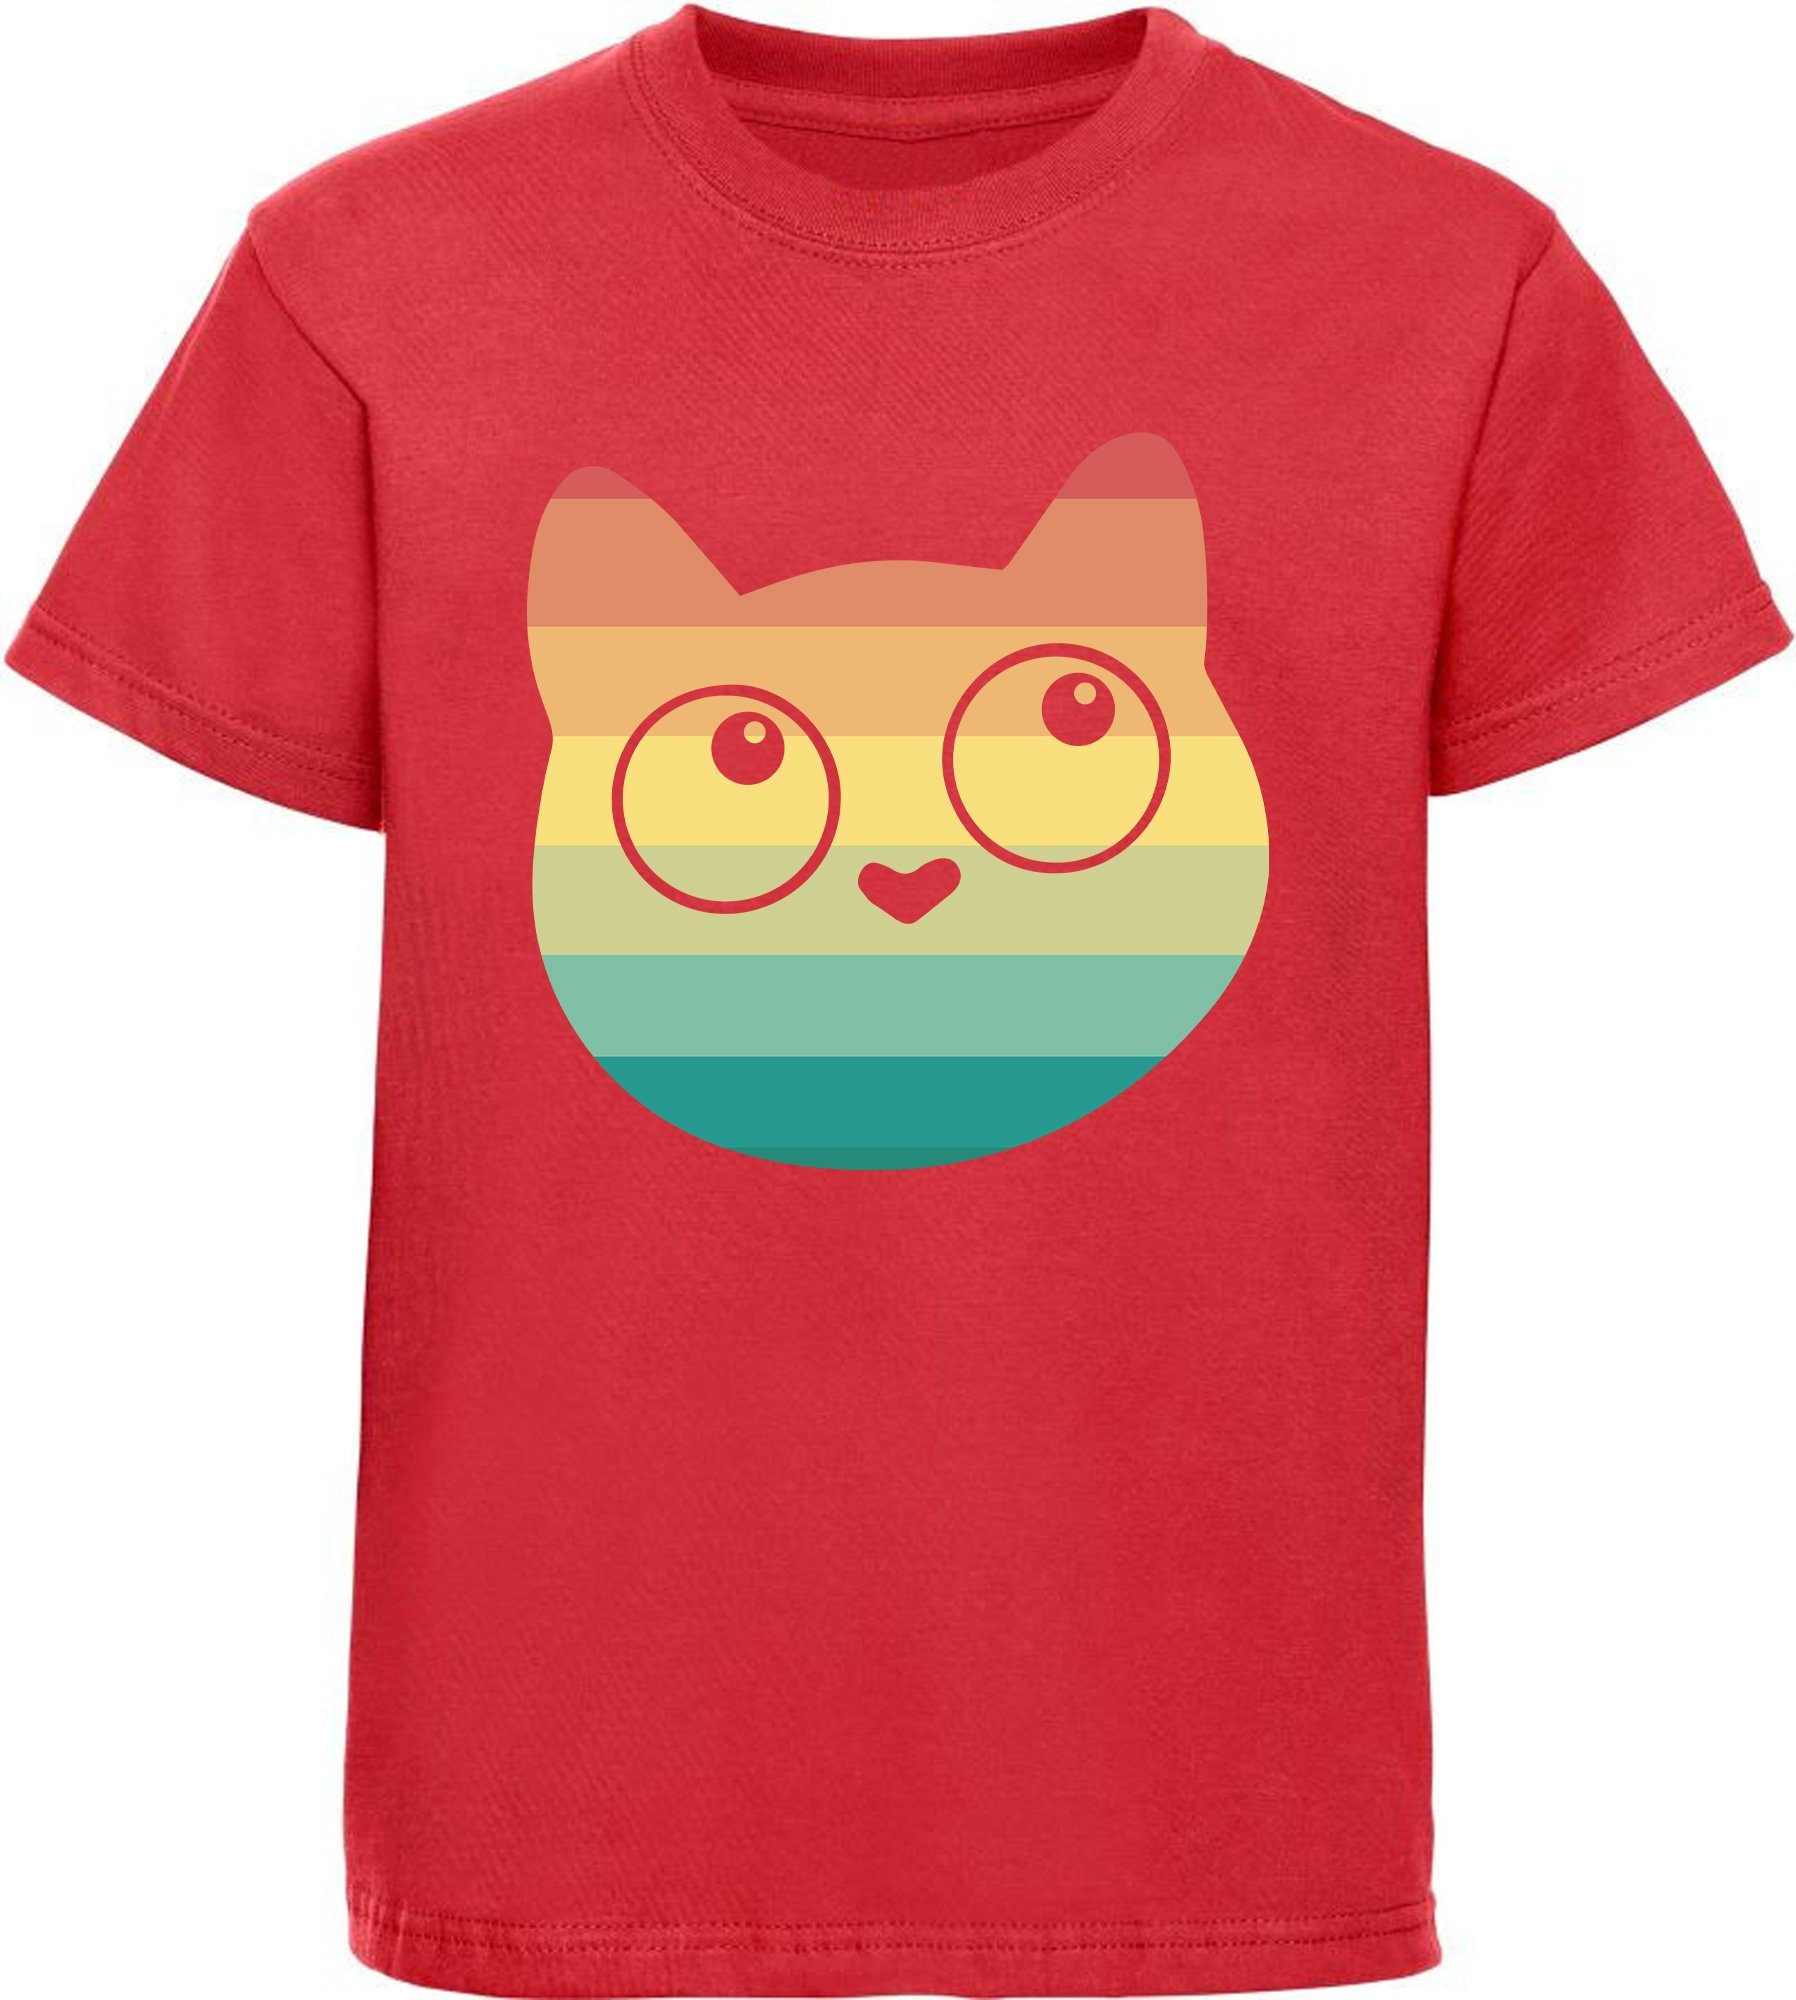 MyDesign24 Print-Shirt bedrucktes Mädchen T-Shirt mit Retro Kitty Aufdruck Baumwollshirt mit Katze, weiß, schwarz, rot, rosa, i128